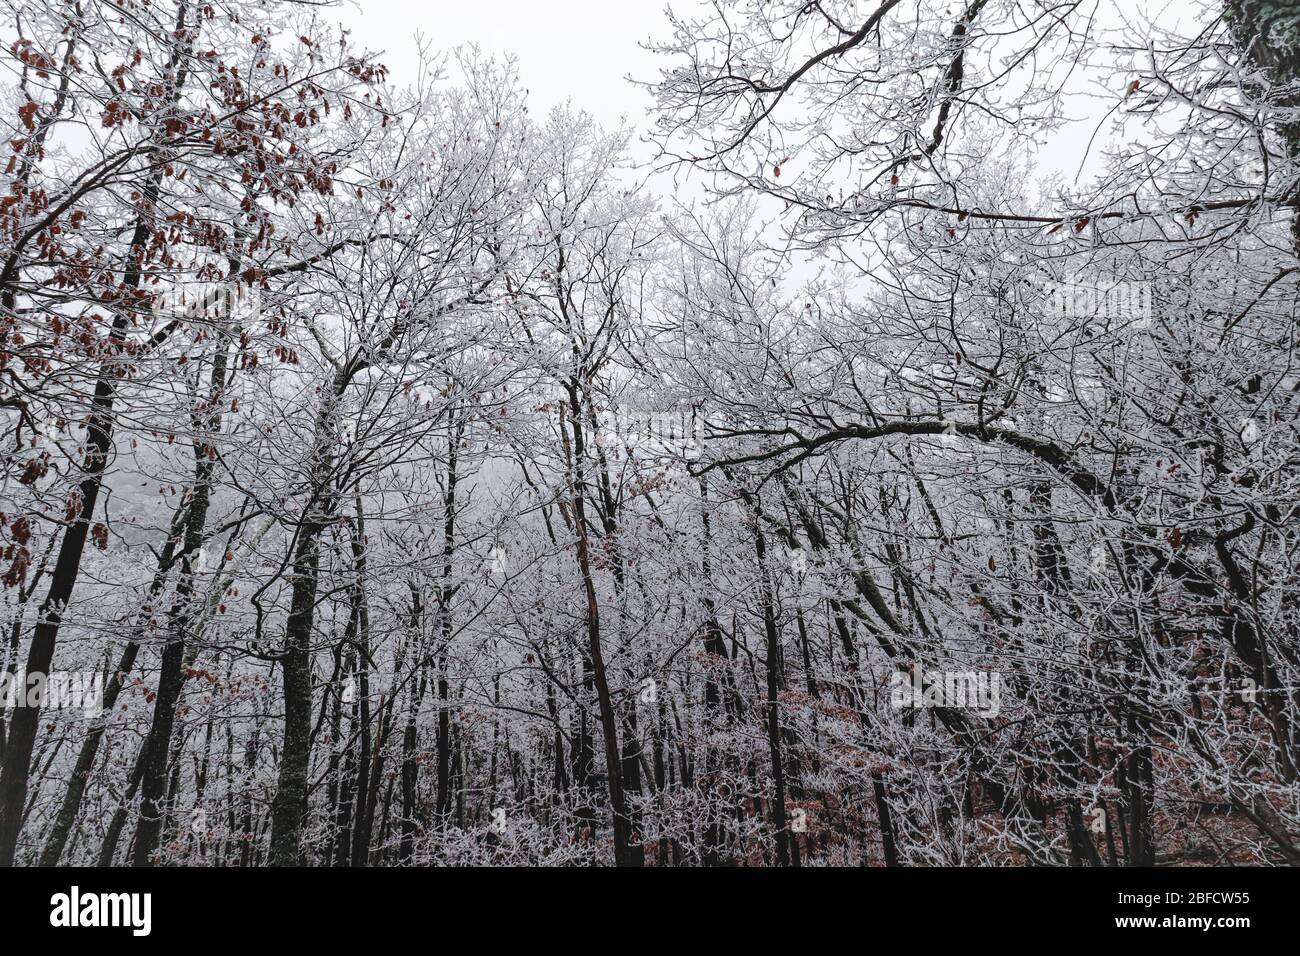 Vue cinématique des arbres recouverts de givre dans les bois pendant la saison d'hiver Banque D'Images